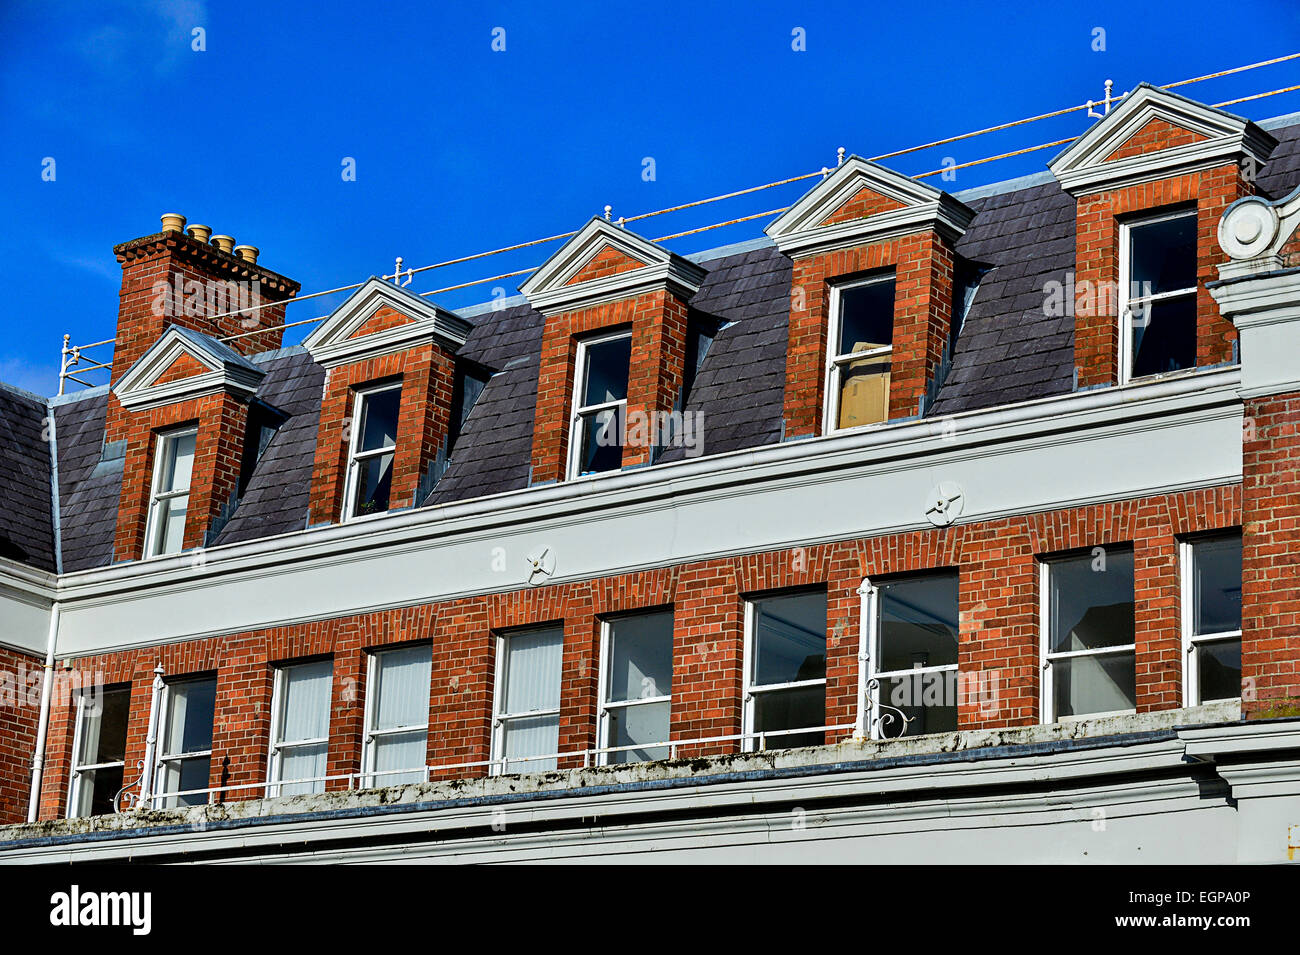 Die Northern Counties Liegenschaft (Baujahr 1902) in Waterloo Place, Londonderry, Nordirland. Foto: George Sweeney / Amamy Stockfoto